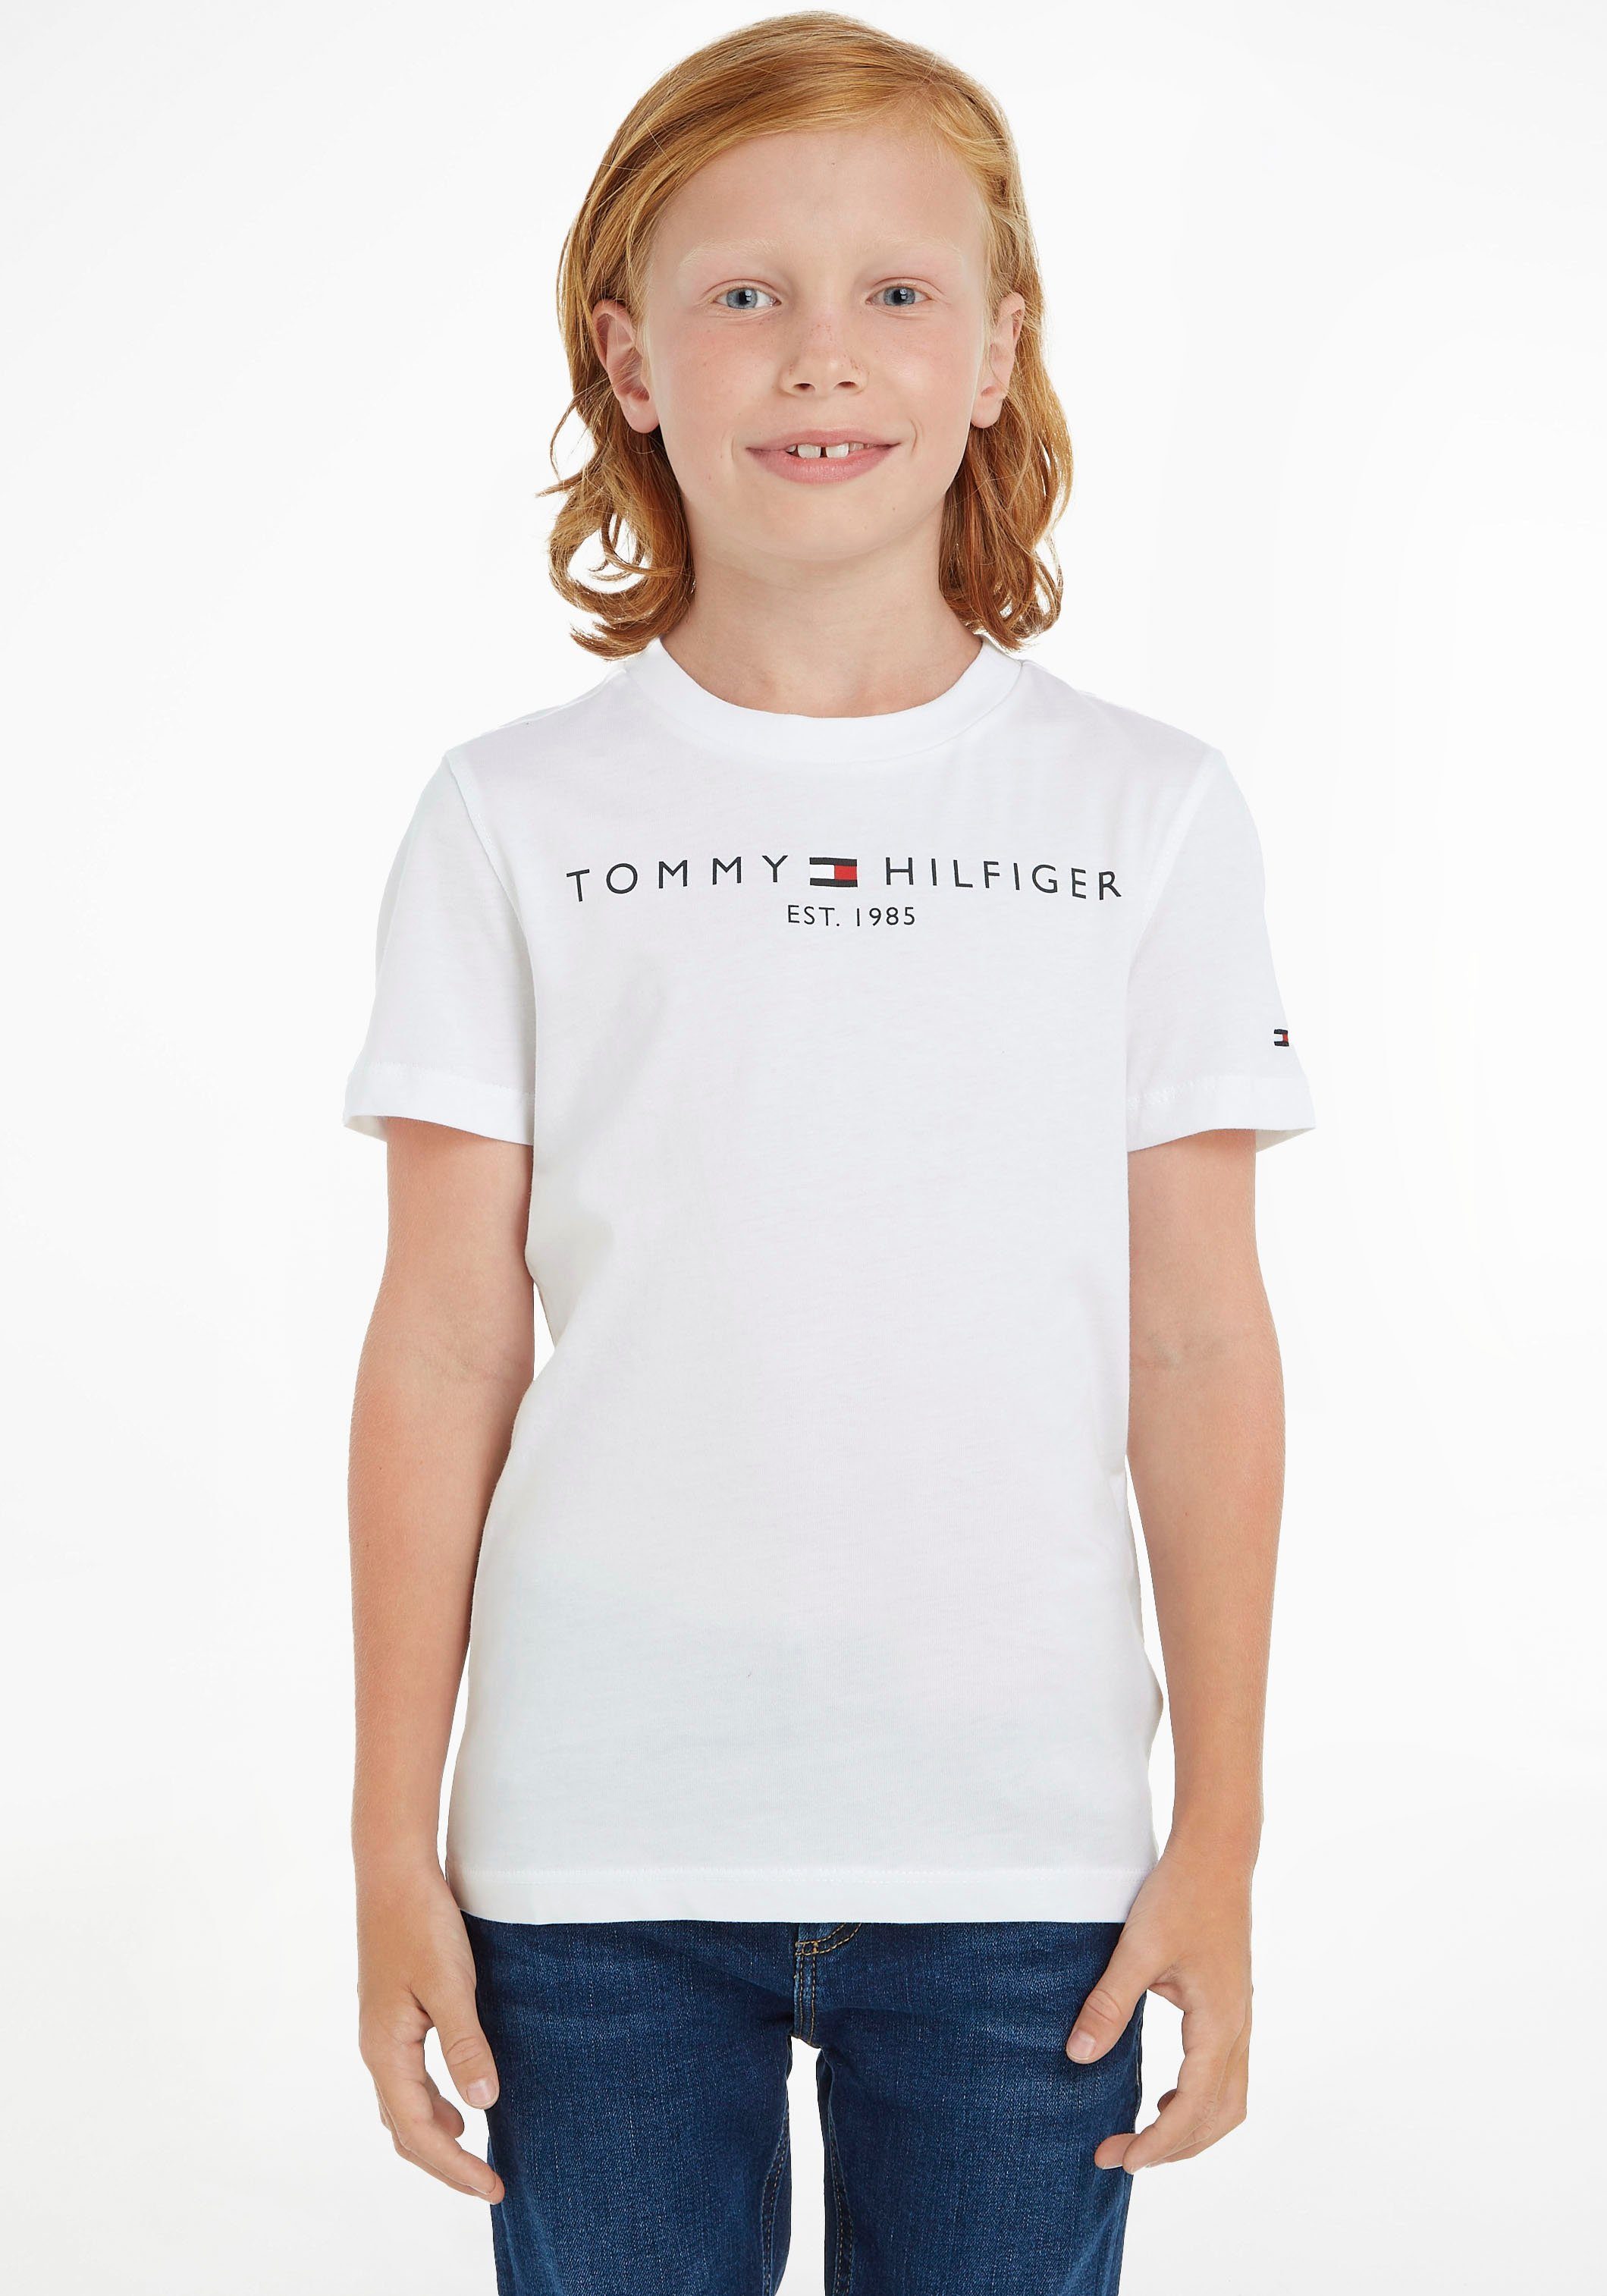 Tommy Hilfiger T-Shirt ESSENTIAL MiniMe,für Junior Jungen Mädchen TEE Kids Kinder und